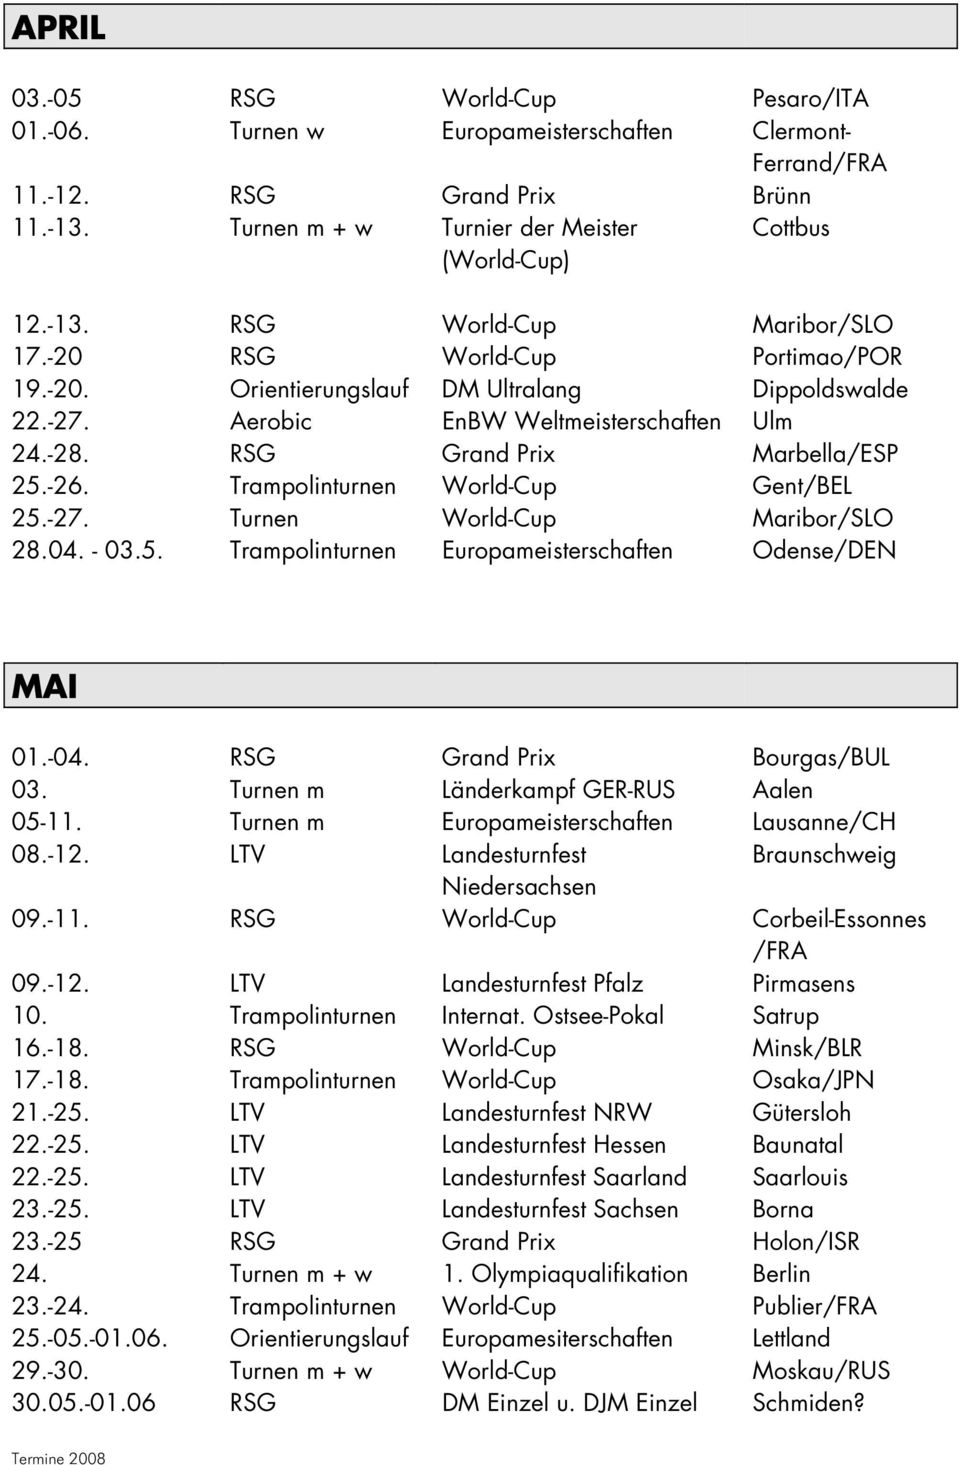 Trampolinturnen World-Cup Gent/BEL 25.-27. Turnen World-Cup Maribor/SLO 28.04. - 03.5. Trampolinturnen Europameisterschaften Odense/DEN MAI 01.-04. RSG Grand Prix Bourgas/BUL 03.